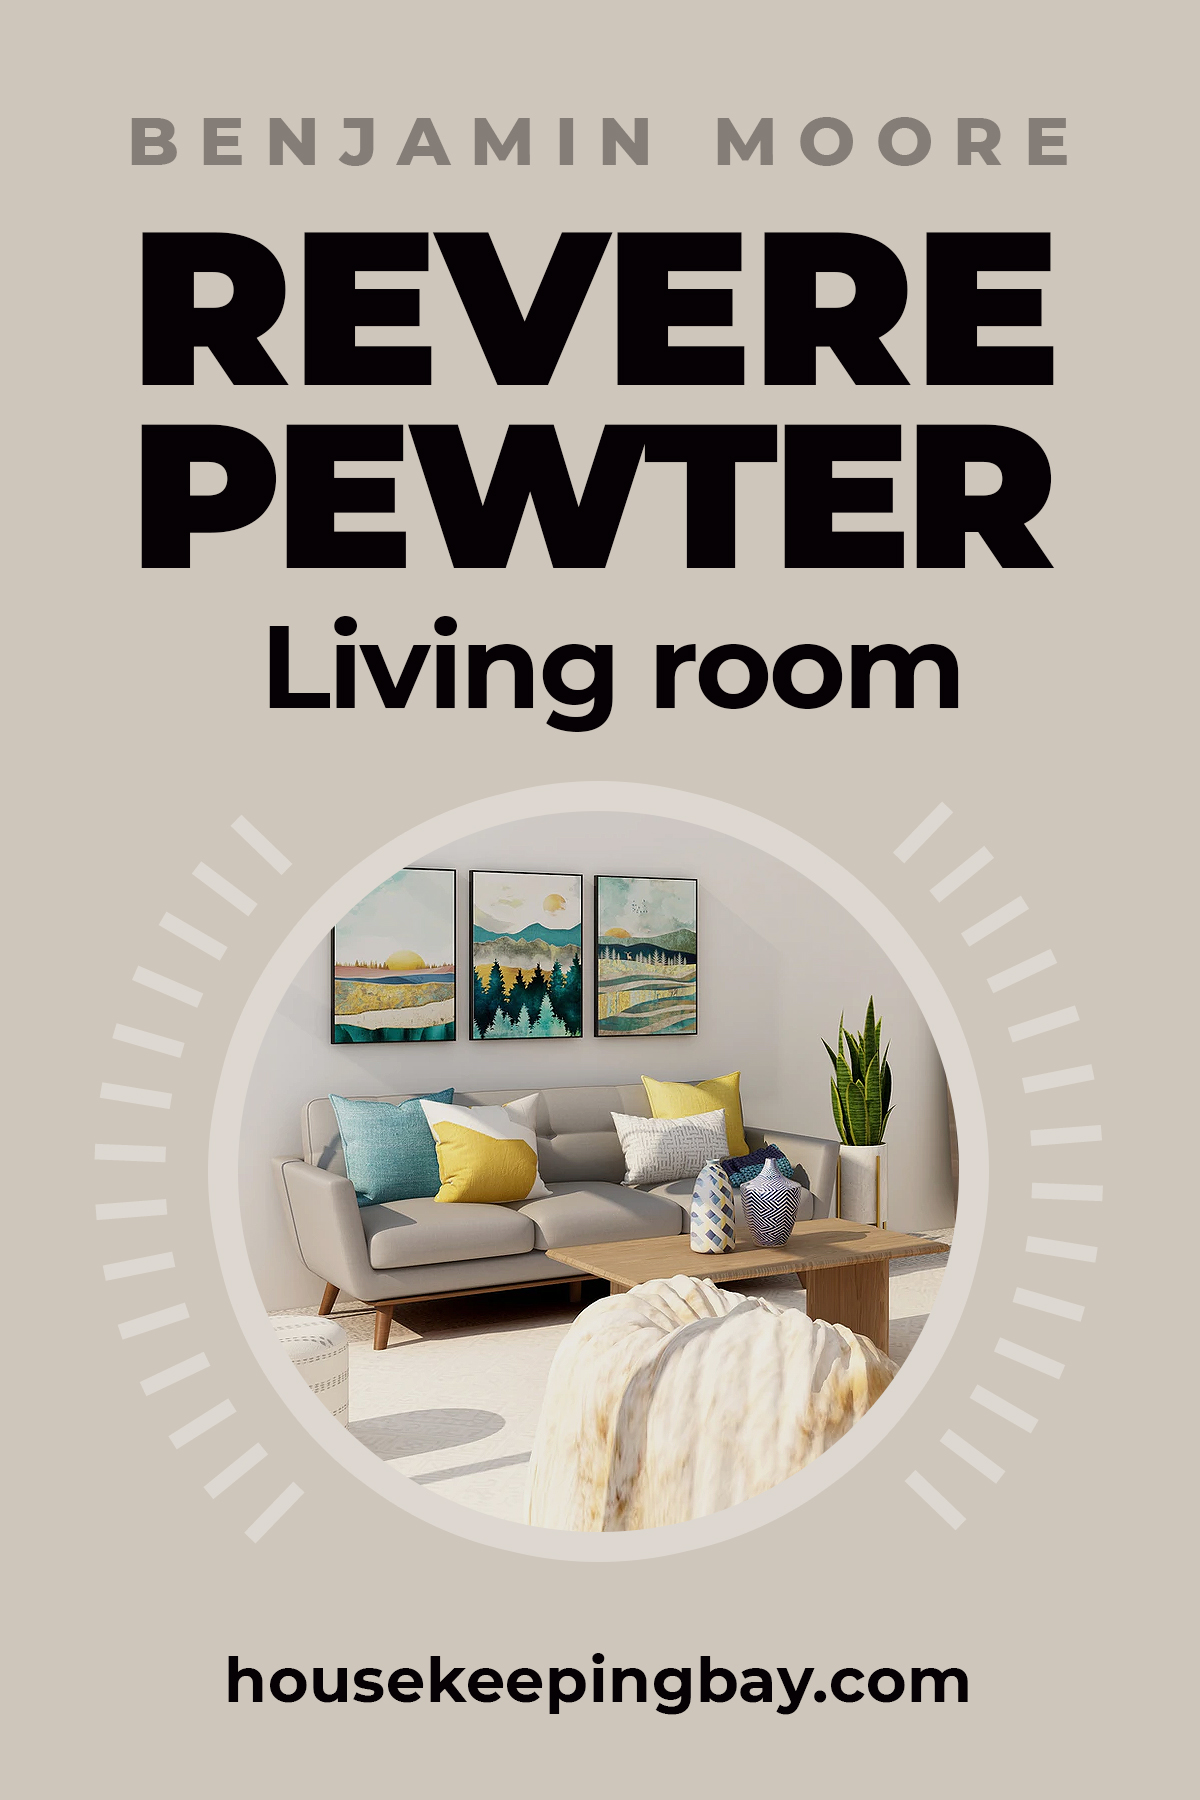 Revere pewter living room